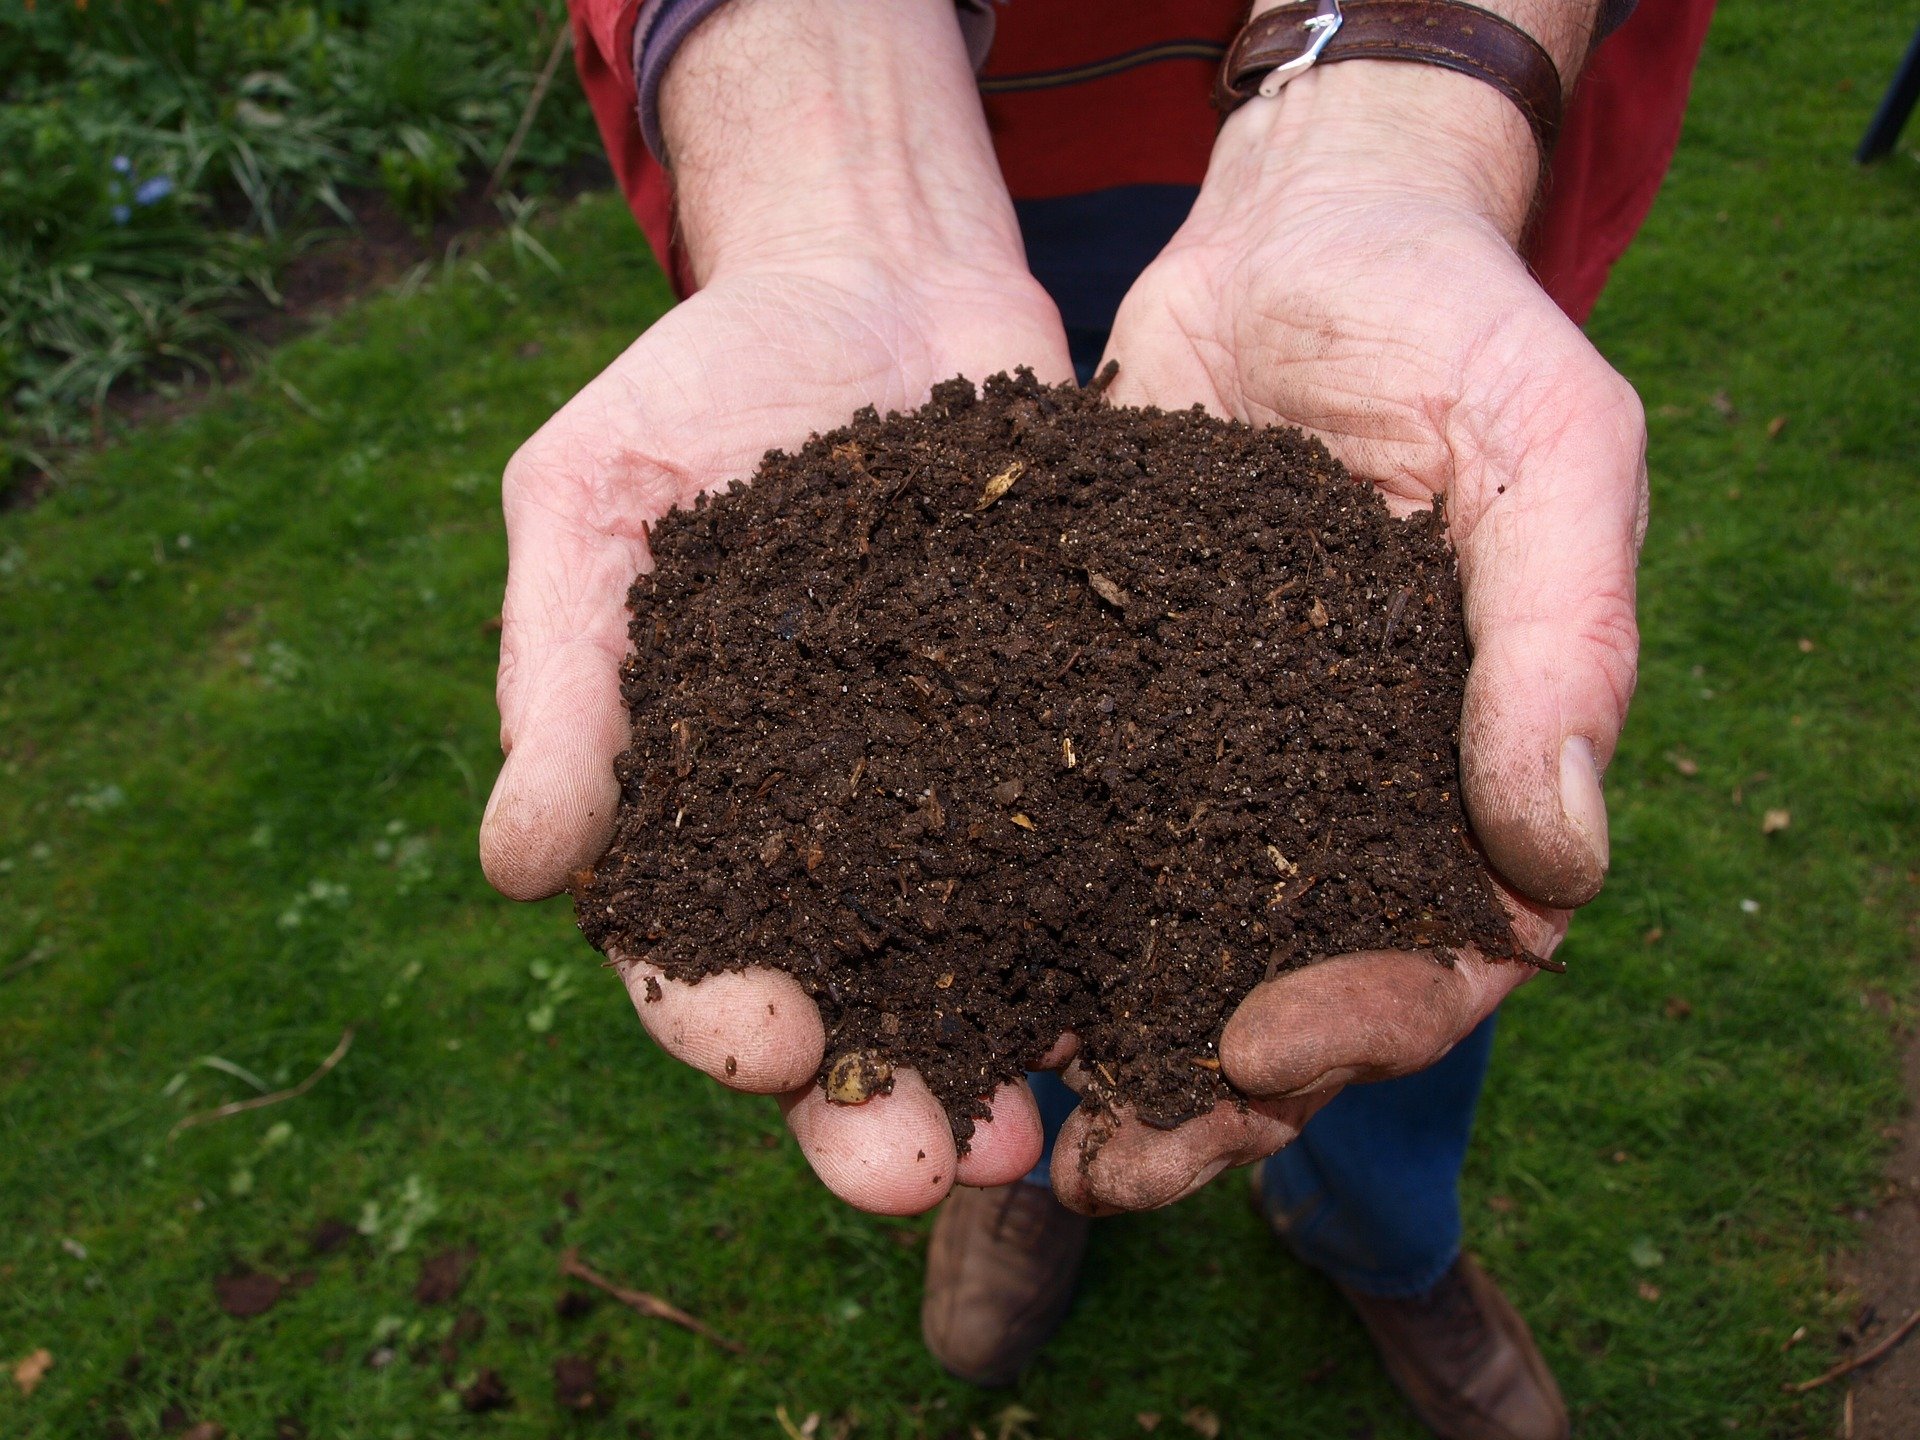 Utiliser correctement le compost dans le jardin - Mon Jardin Ideal